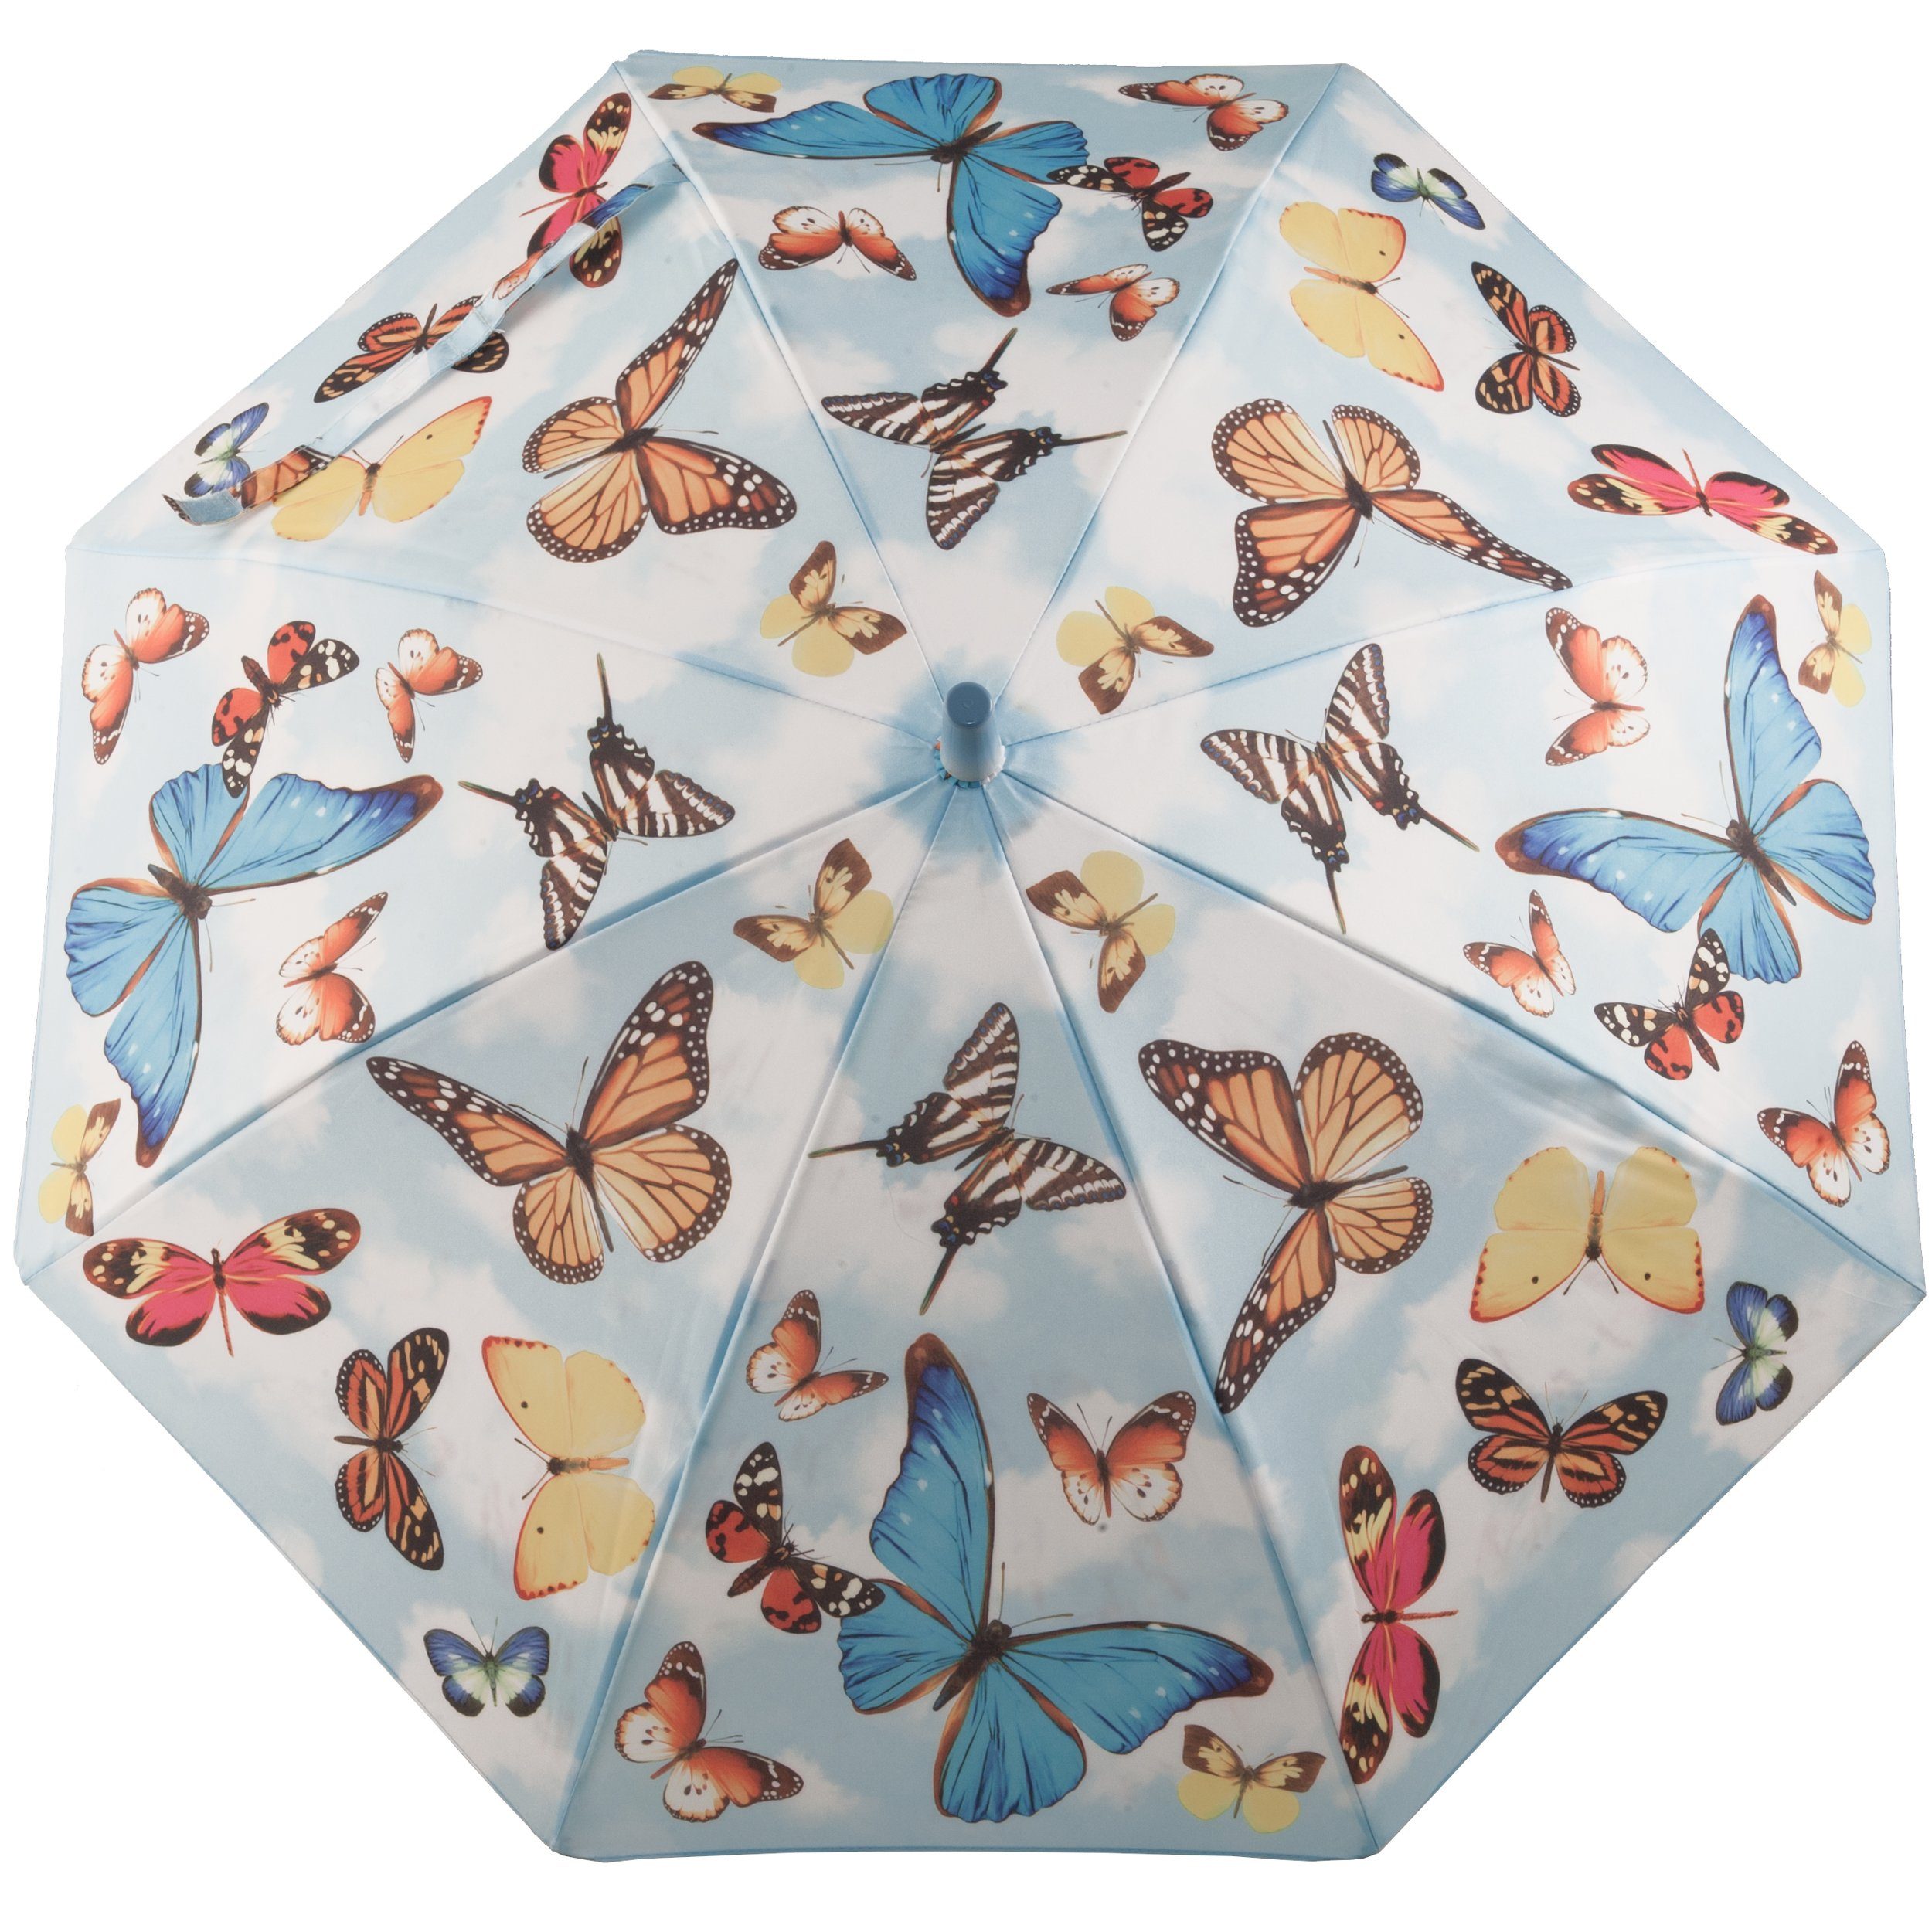 ROSEMARIE SCHULZ Heidelberg Stockregenschirm Kinderschirm für Mädchen Regenschirm Motiv Schmetterlinge, Leichter Kinderschirm